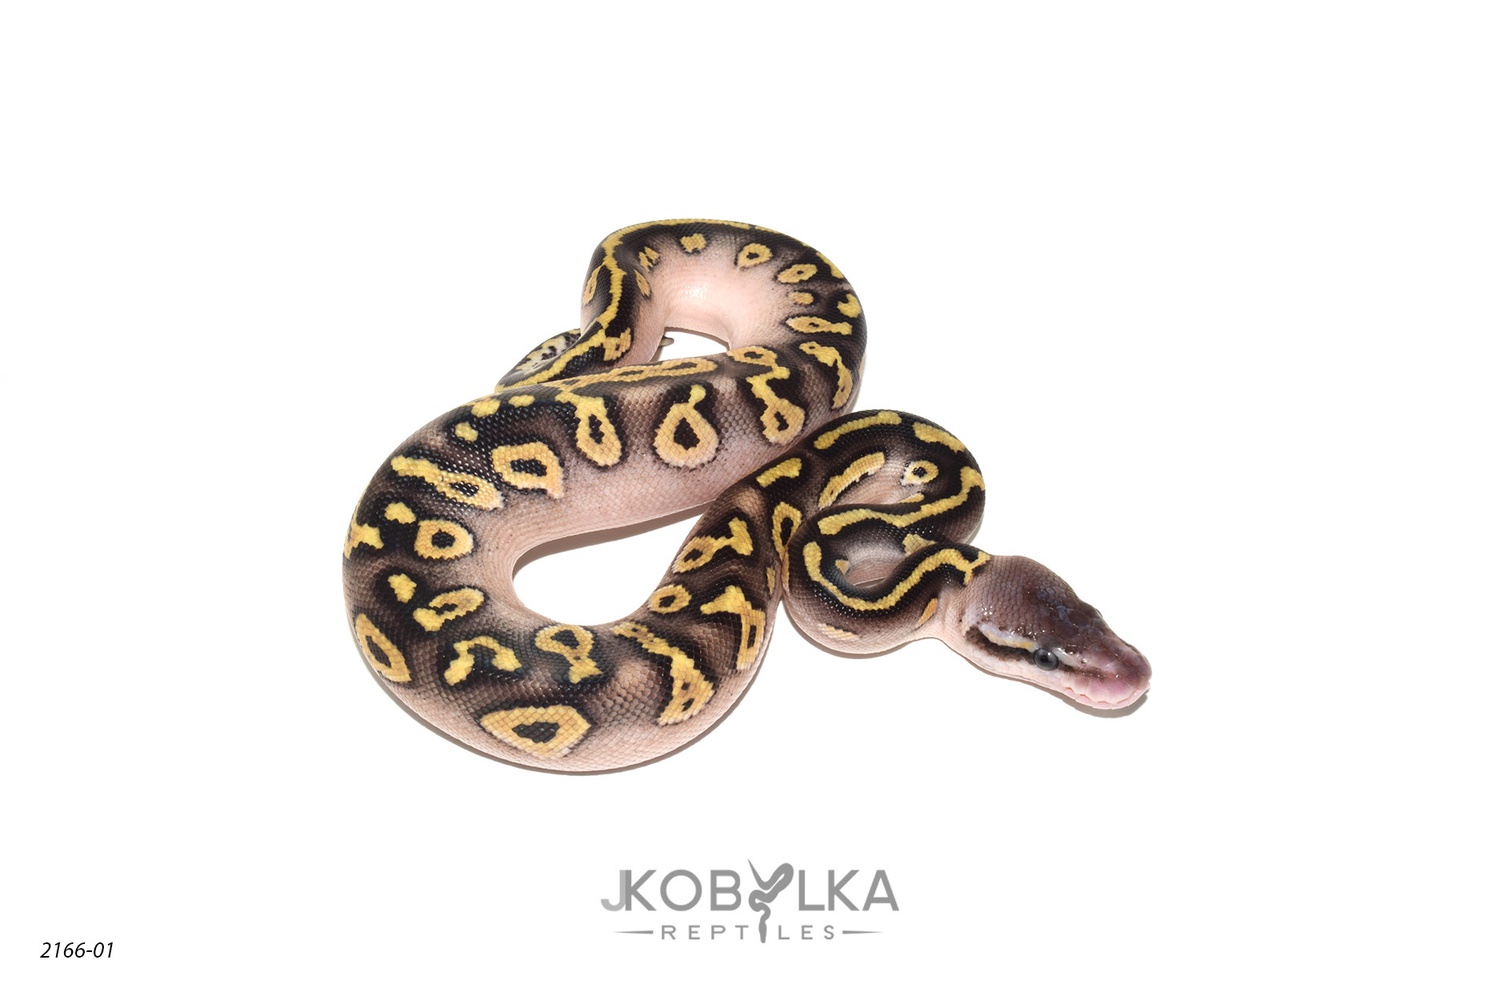 Pastel Mojave Wookie Het Monsoon Ball Python by J. Kobylka Reptiles